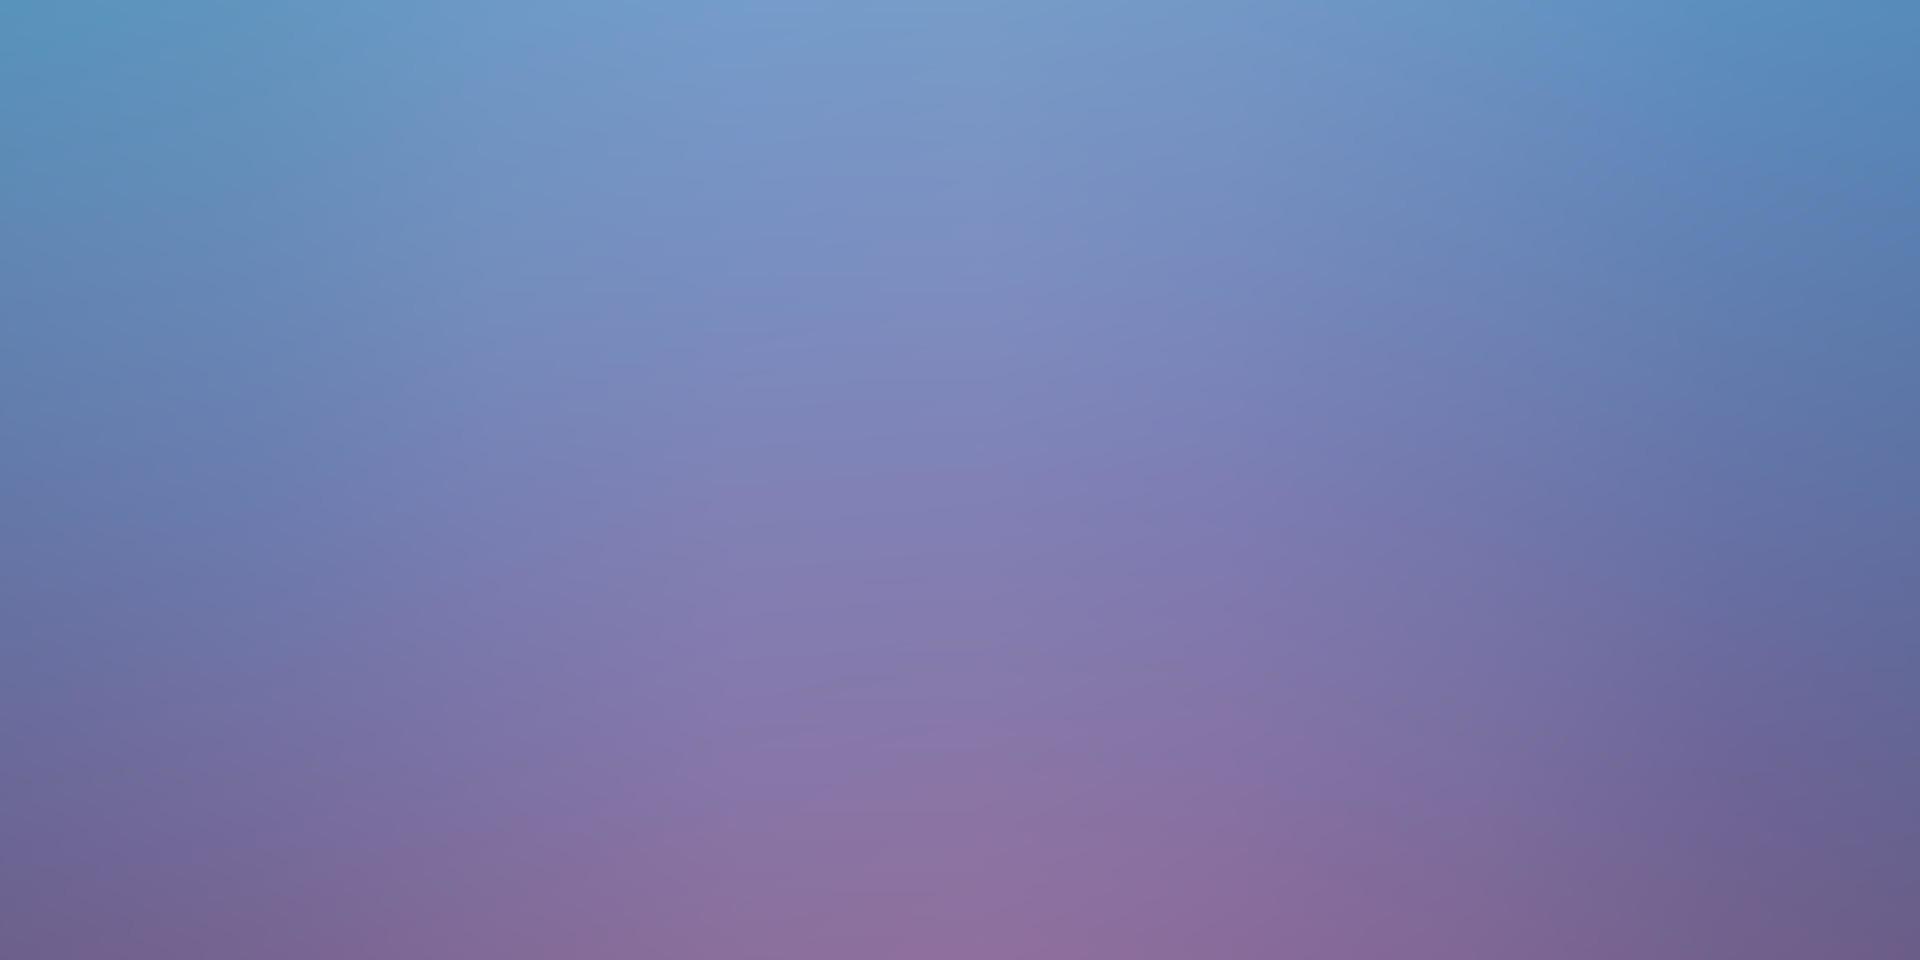 sfondo sfocato astratto vettoriale rosa chiaro, blu.